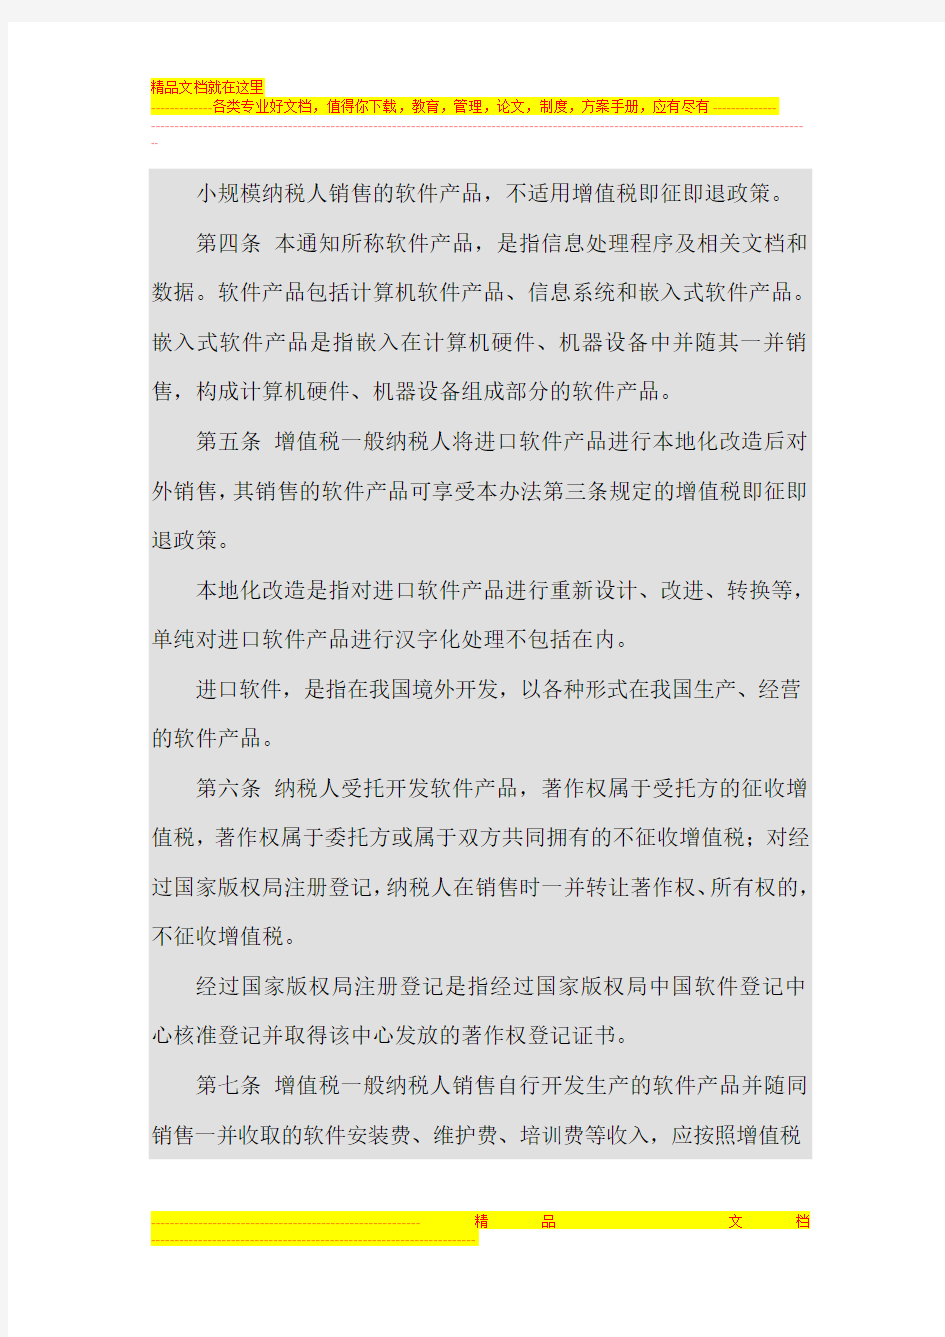 深圳市软件产品增值税即征即退管理办法深圳市国家税务局公告2011年第9号